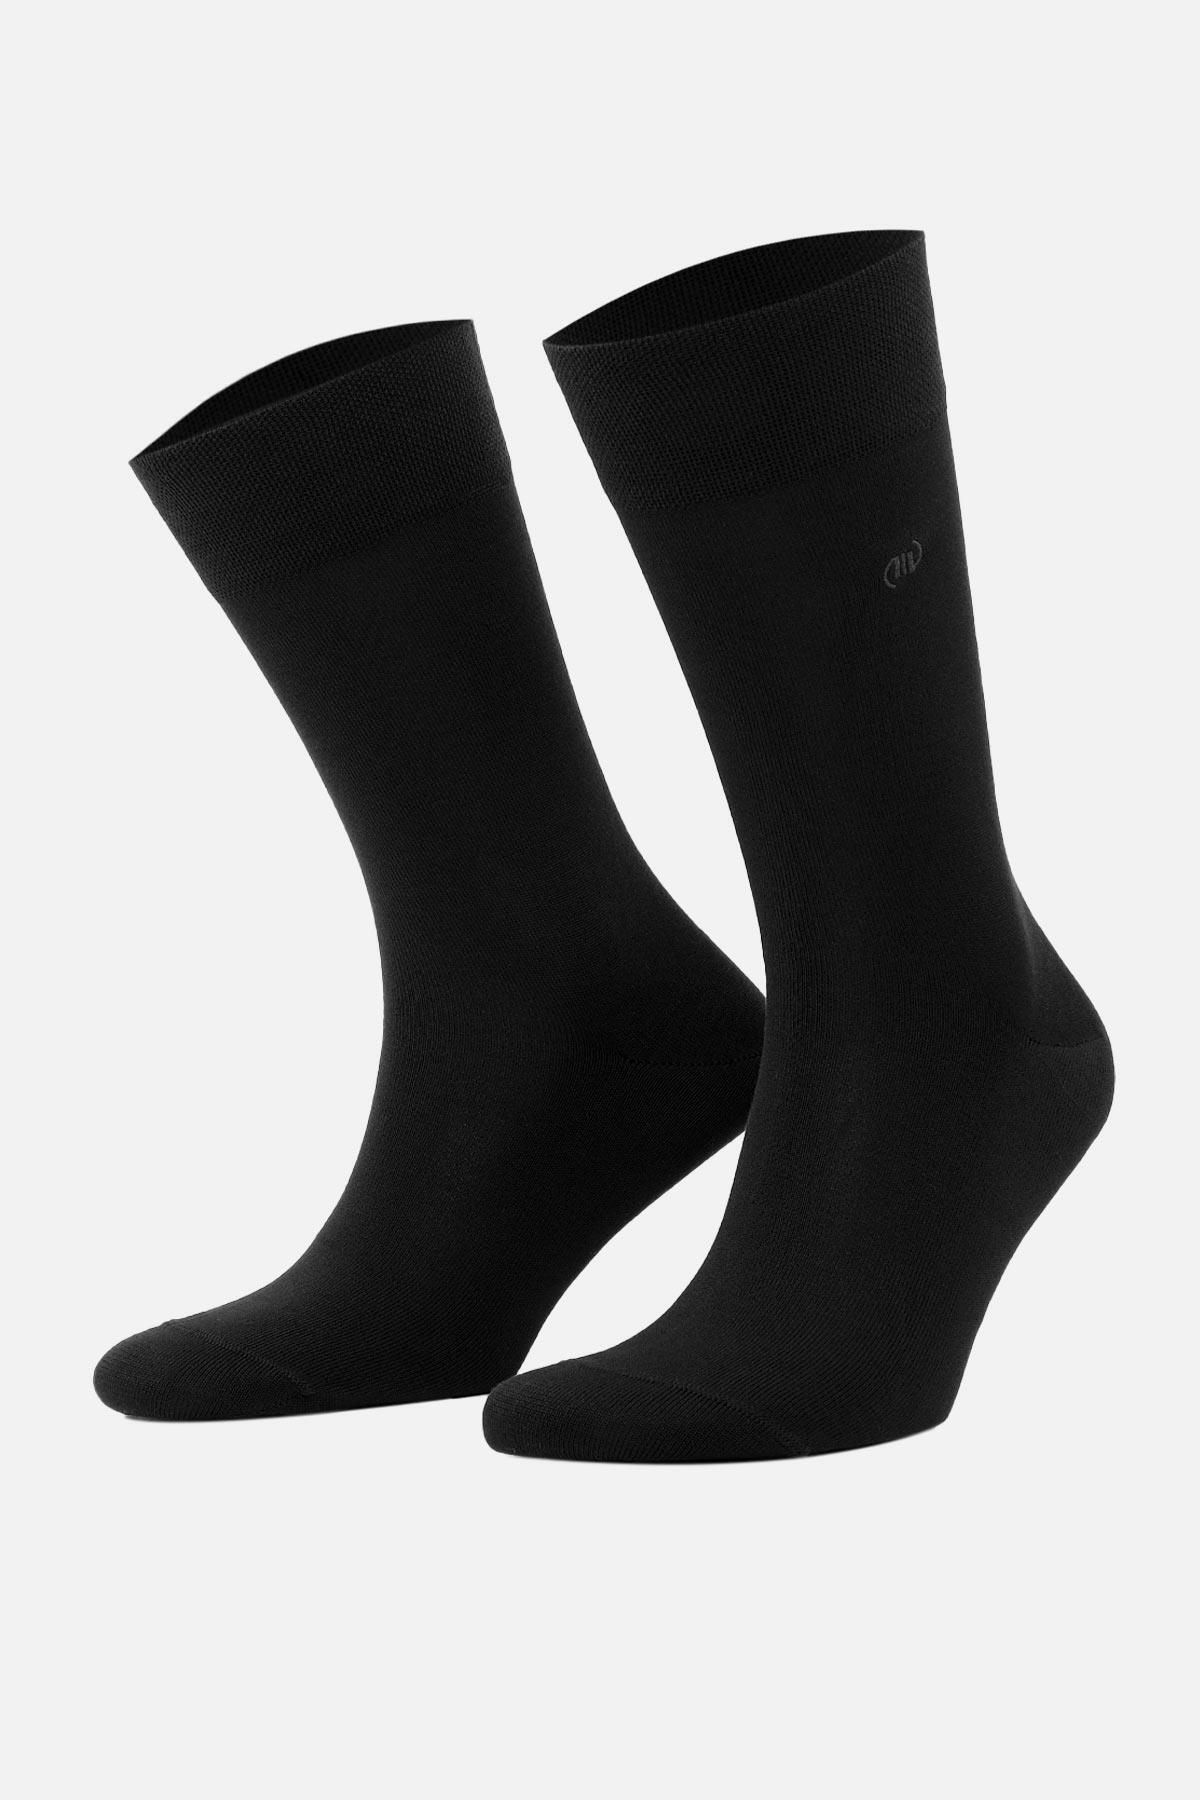 Mısırlı Erkek Merserize Tekli Siyah Soket Çorap M 67000 Si